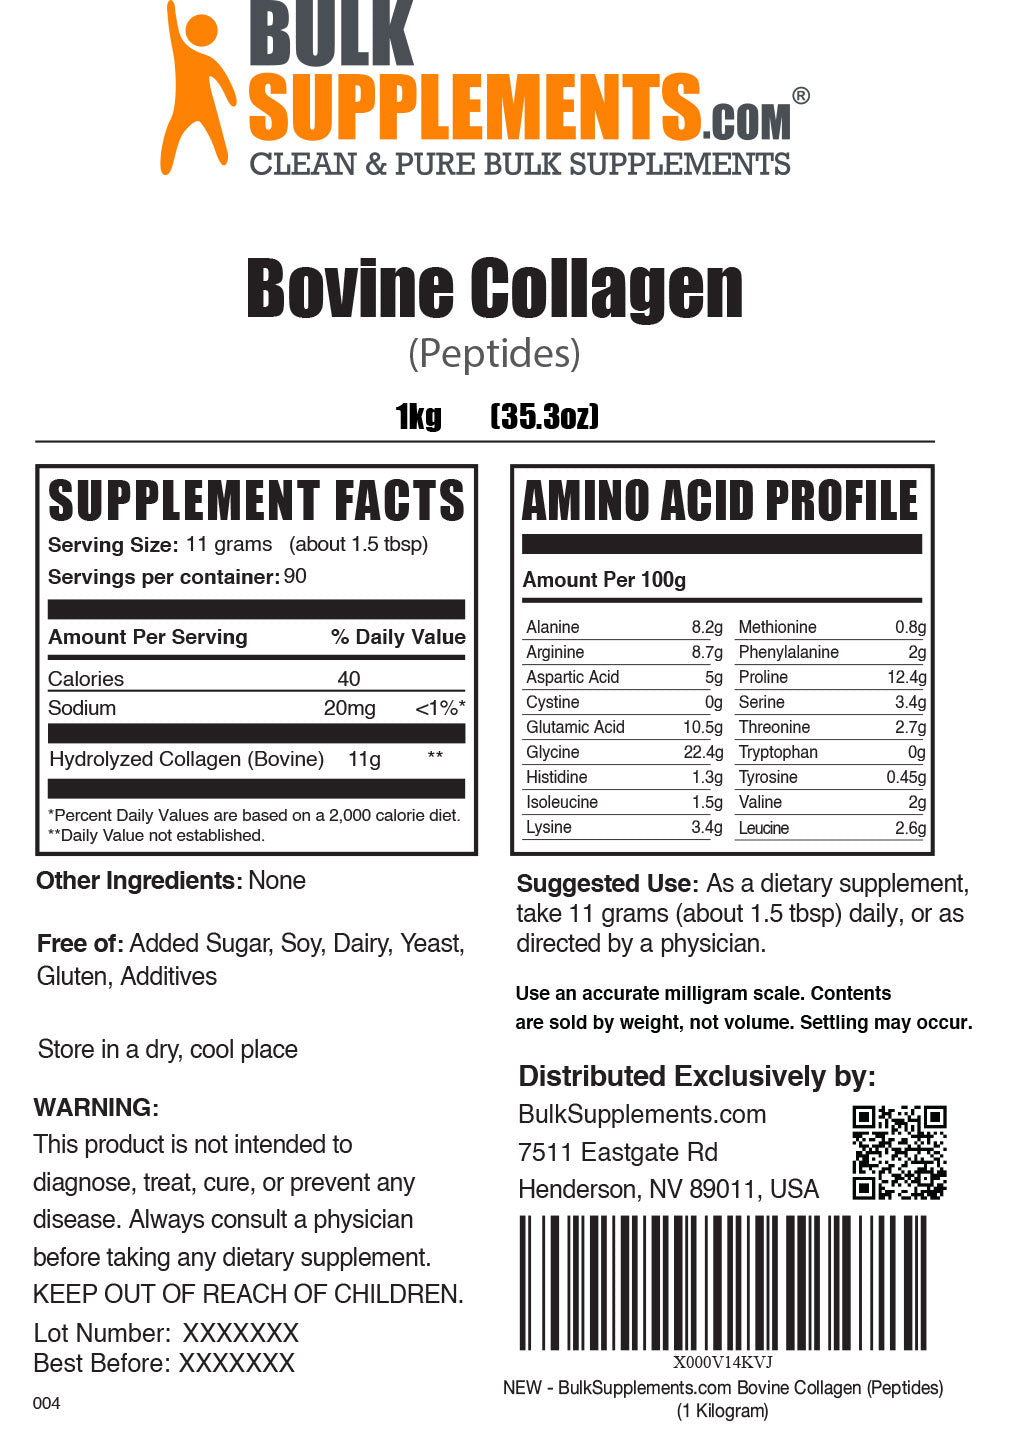 Bovine Collagen Supplement Facts